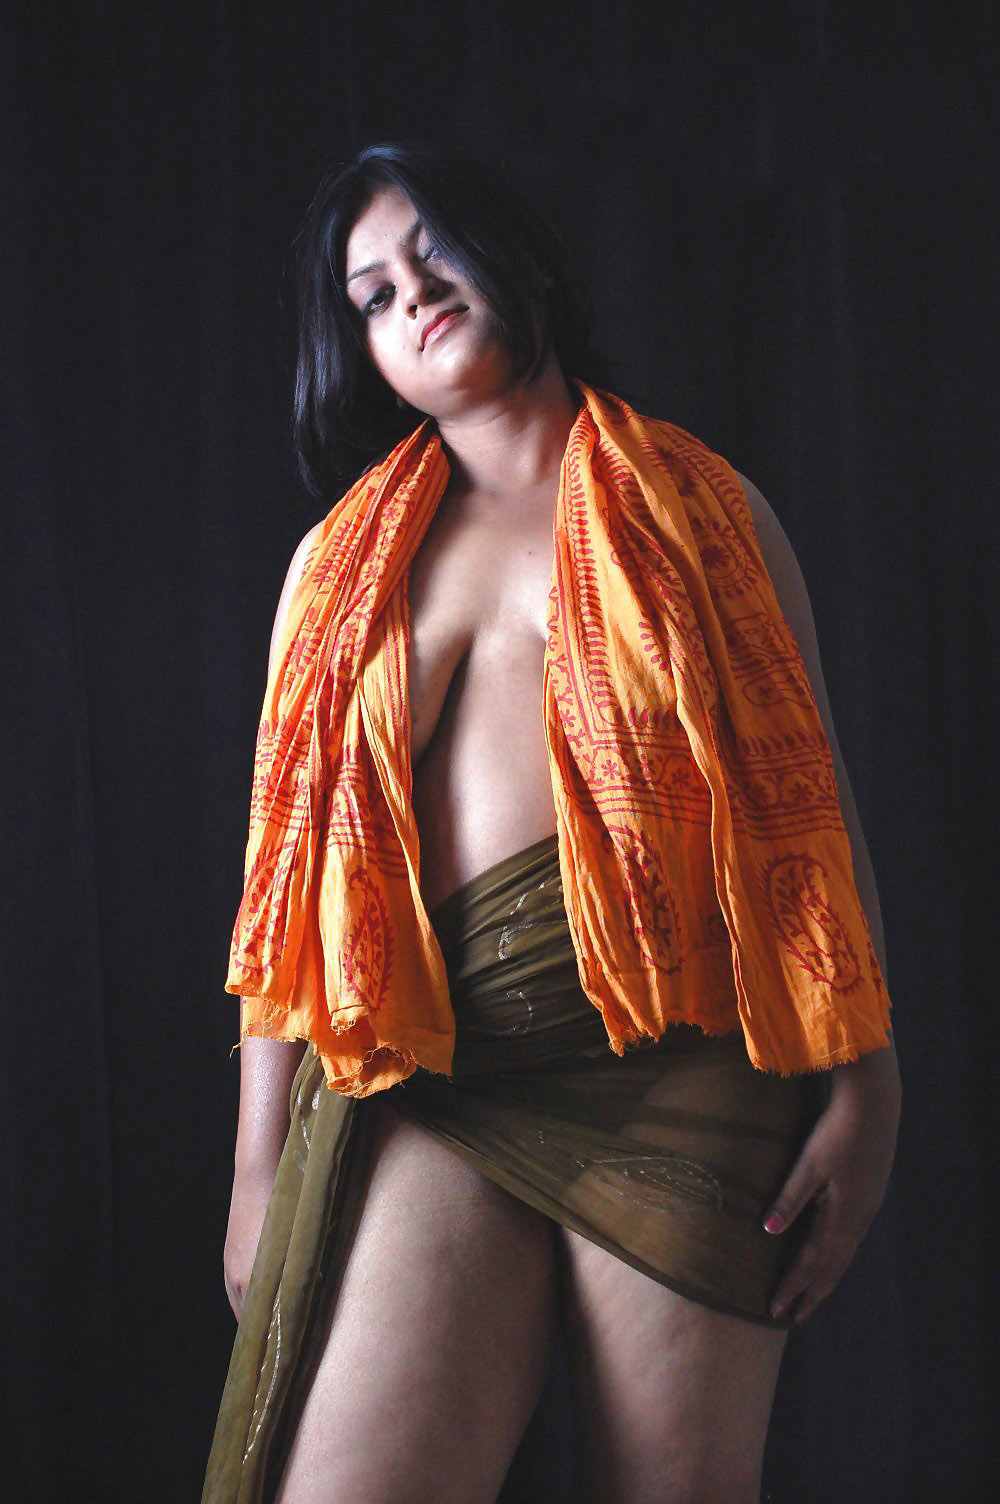 Long Haiar Nude Model India - Dusky Indian Model Art Nude Photos hoot | Unbelievable Photo ...